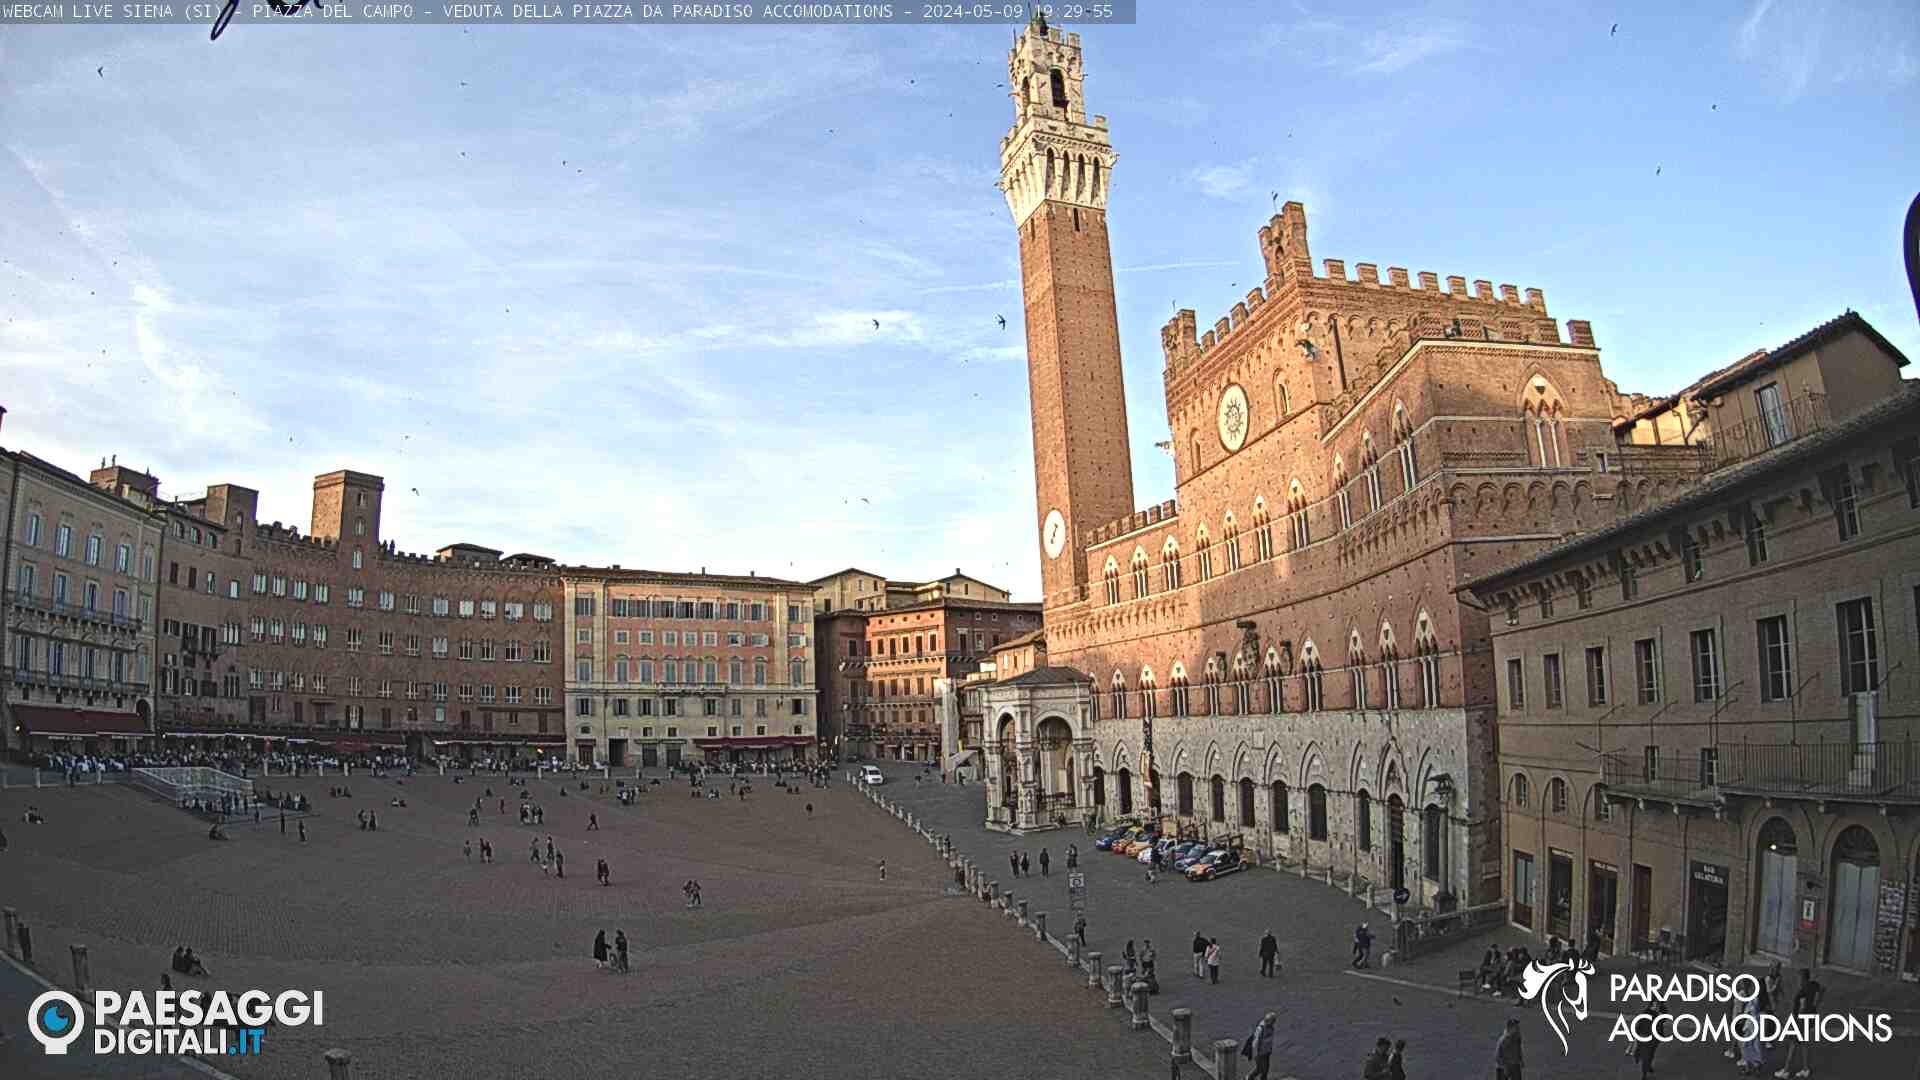 Siena (SI) – Piazza del Campo